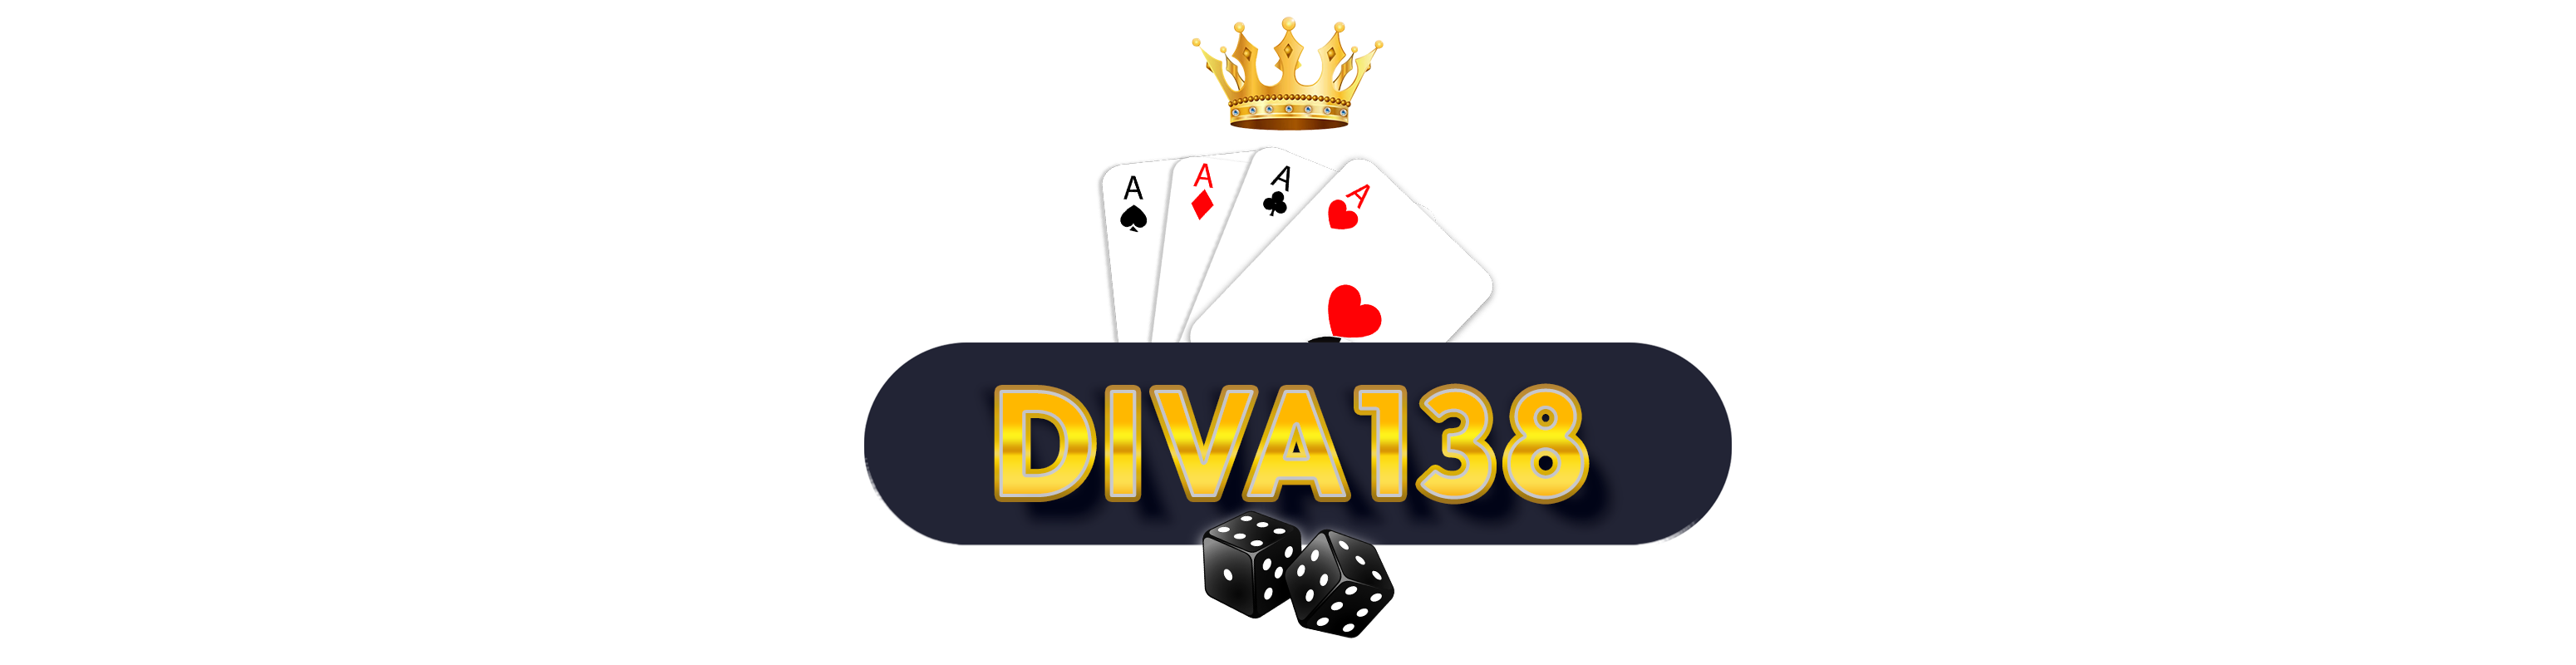 diva138